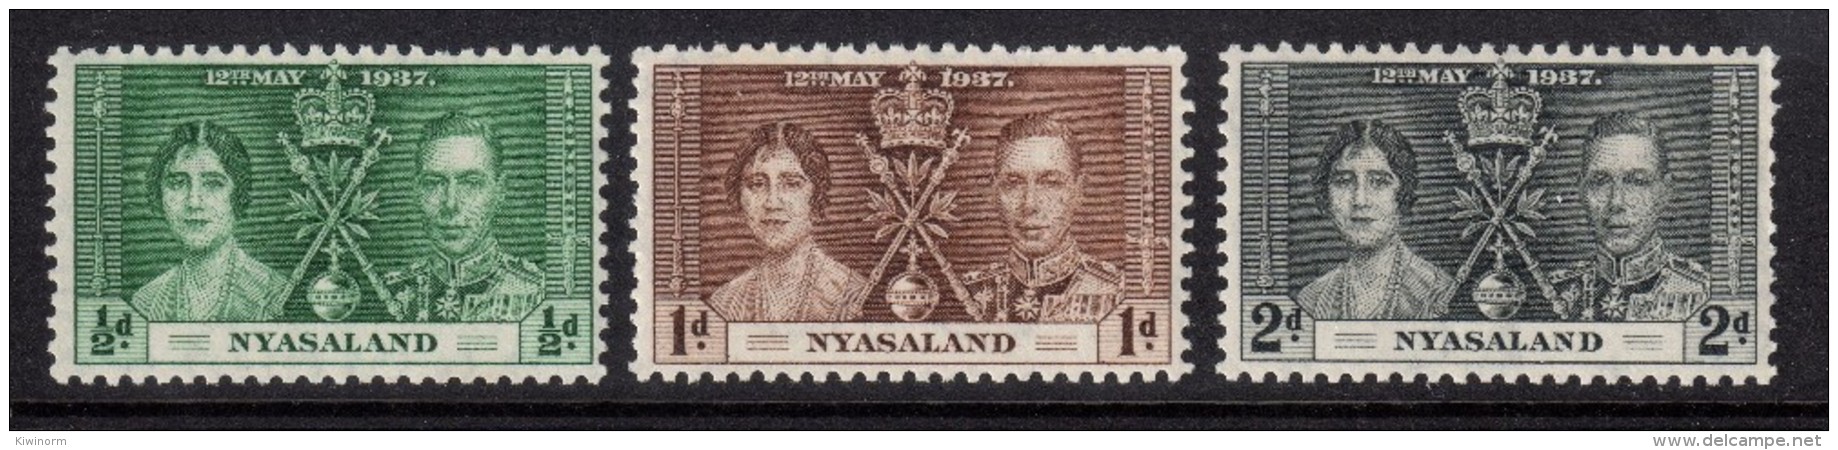 NYASALAND 1937 Coronation Omnibus Set - Mint Hinged - MH * - 5B802 - Nyasaland (1907-1953)